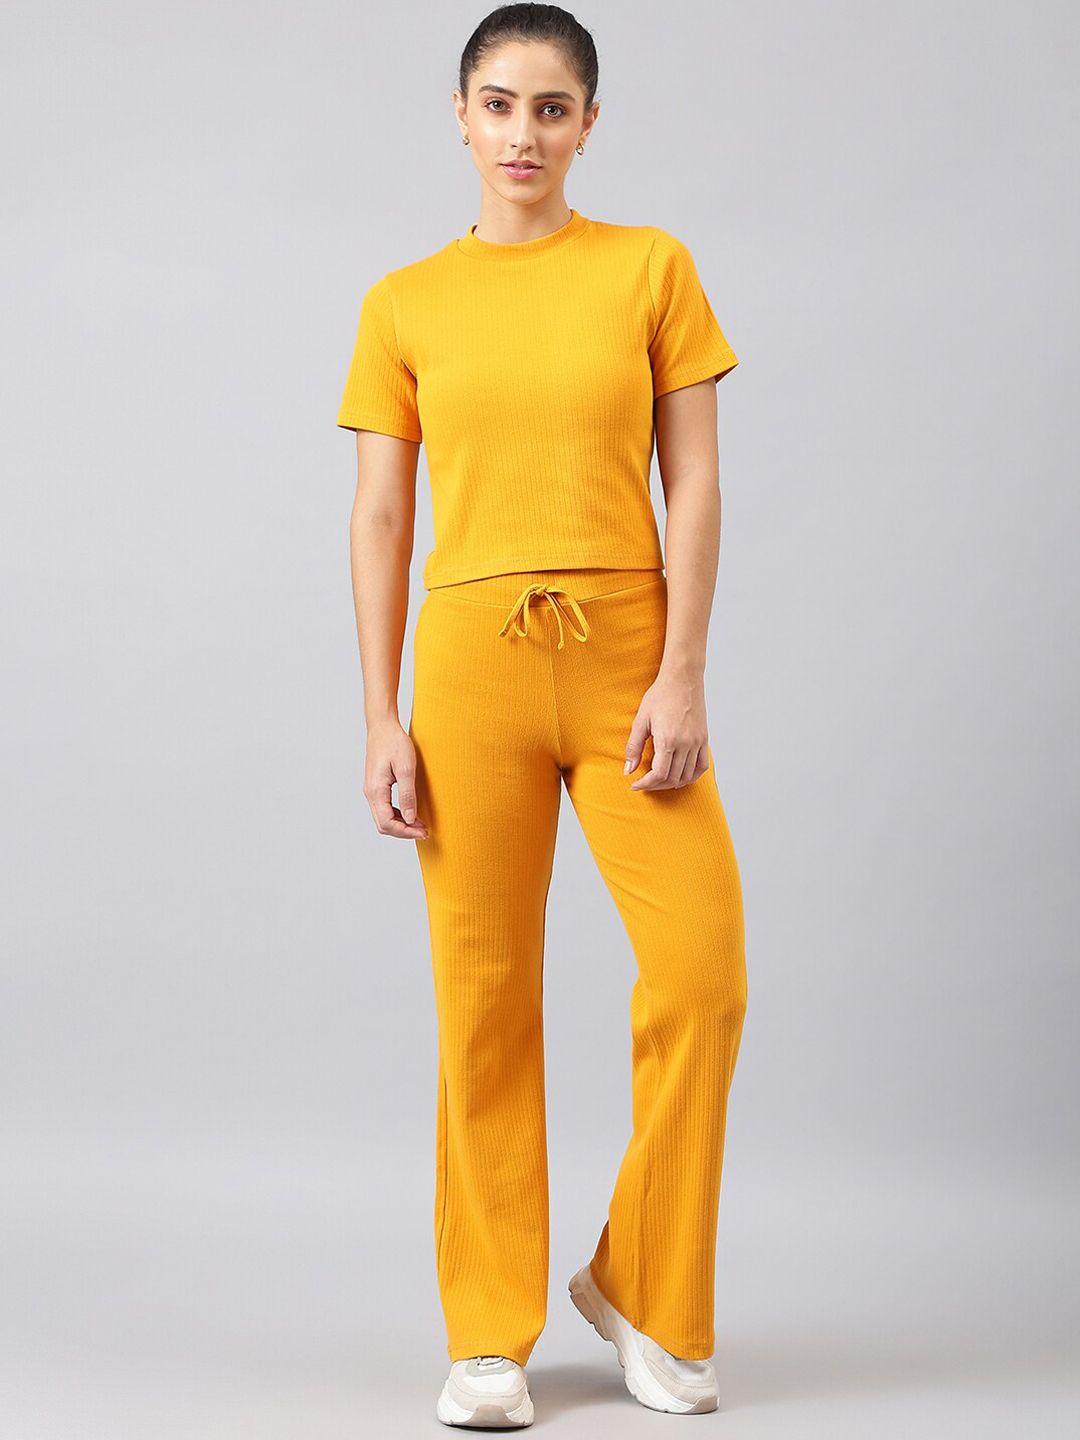 femea women yellow t-shirt with trousers